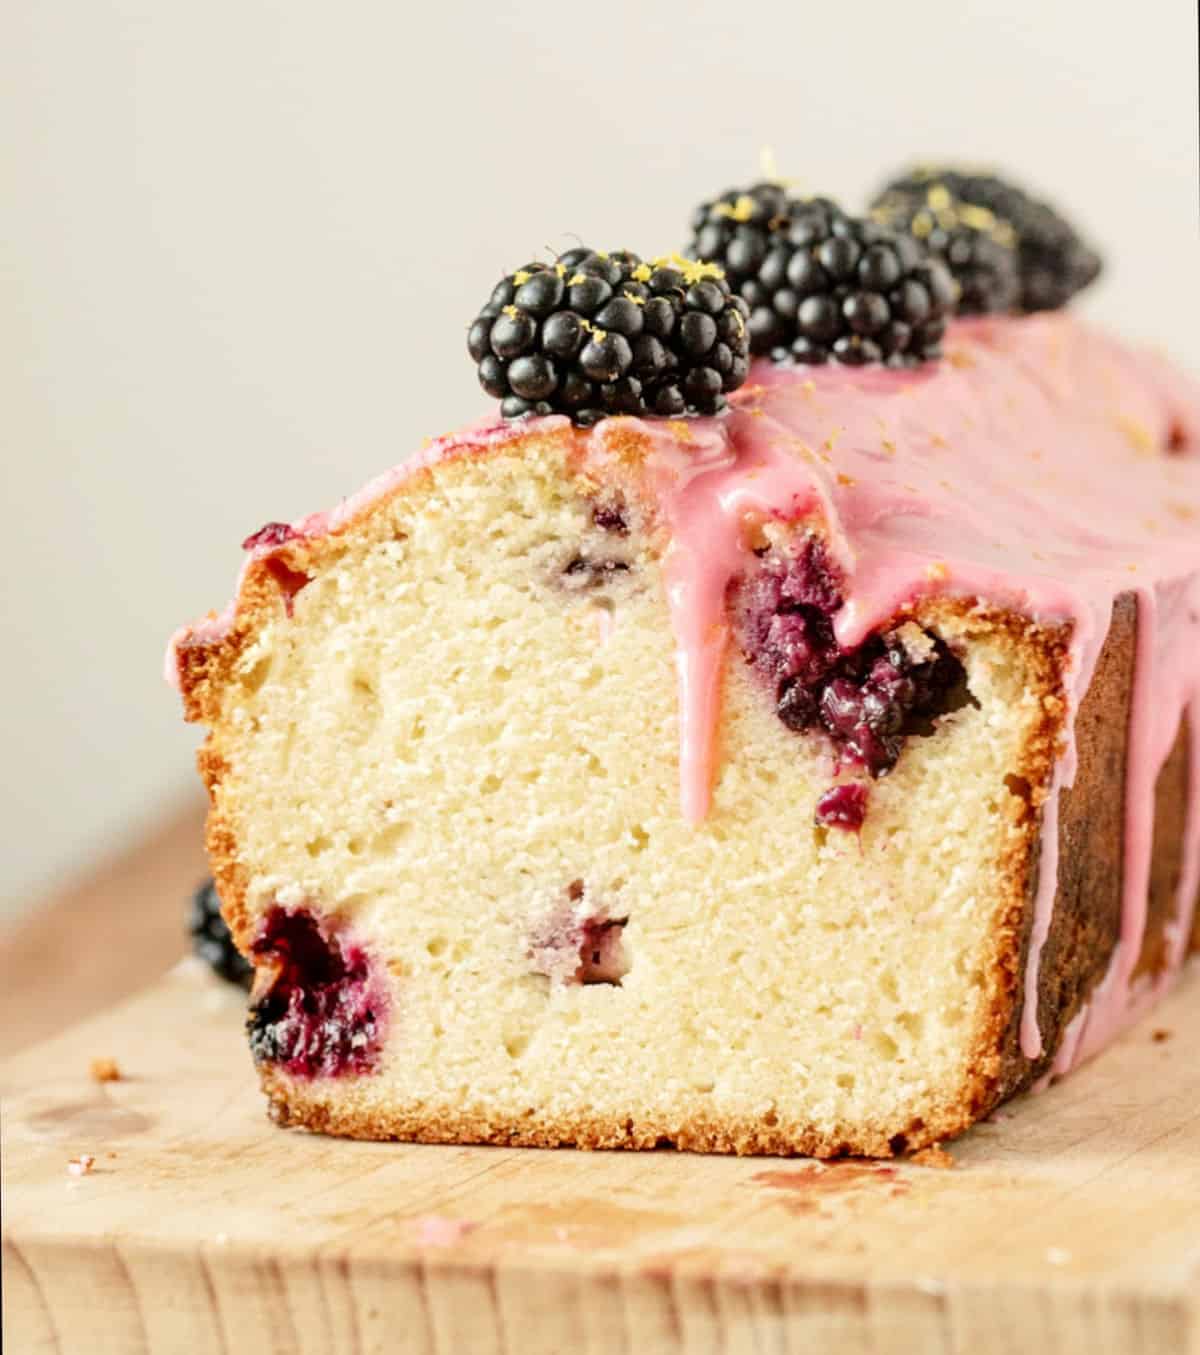 Dripping pink glaze on loaf of cut blackberry lemon bread on a wooden board.